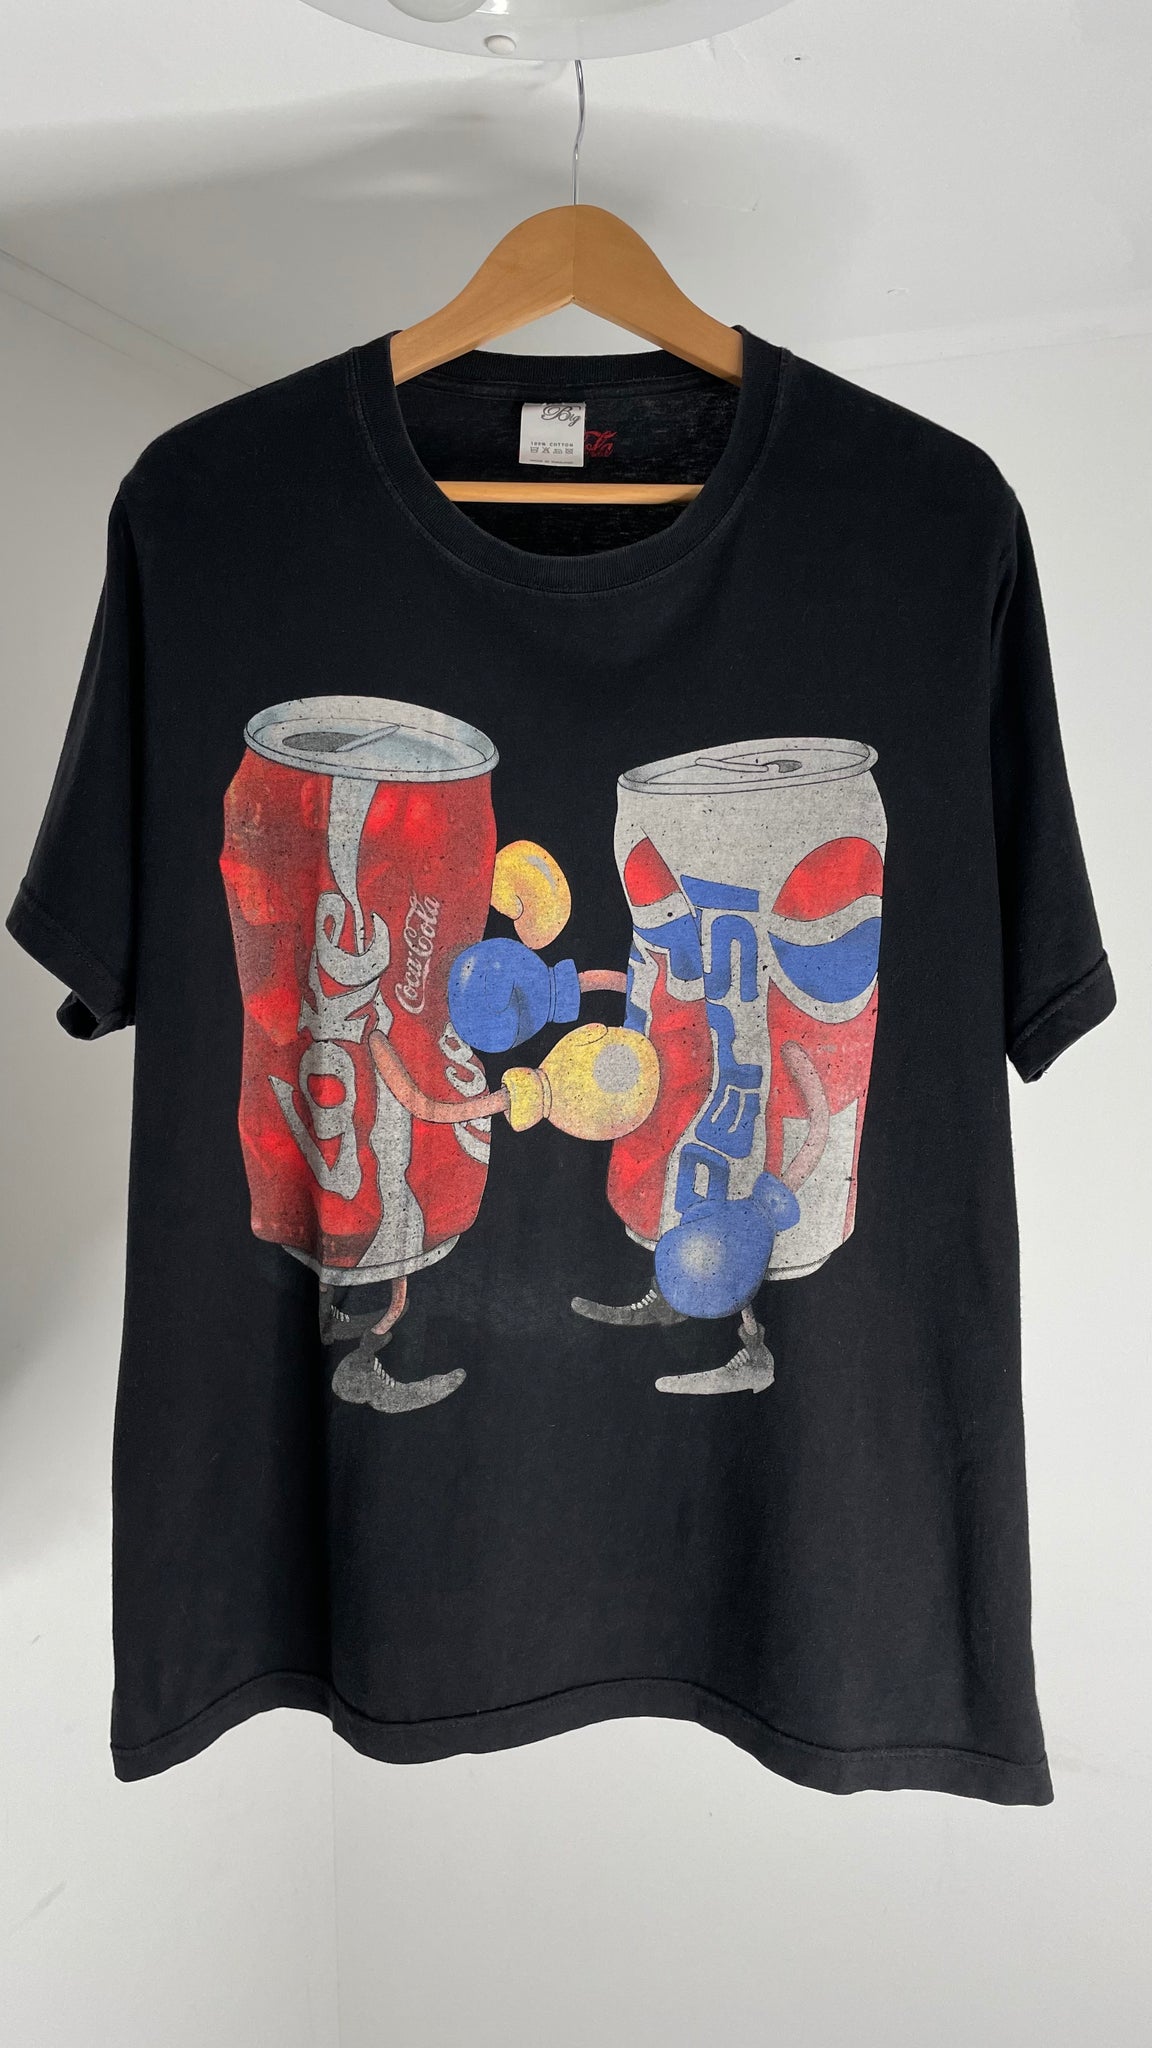 Coke Pepsi Shirt XL